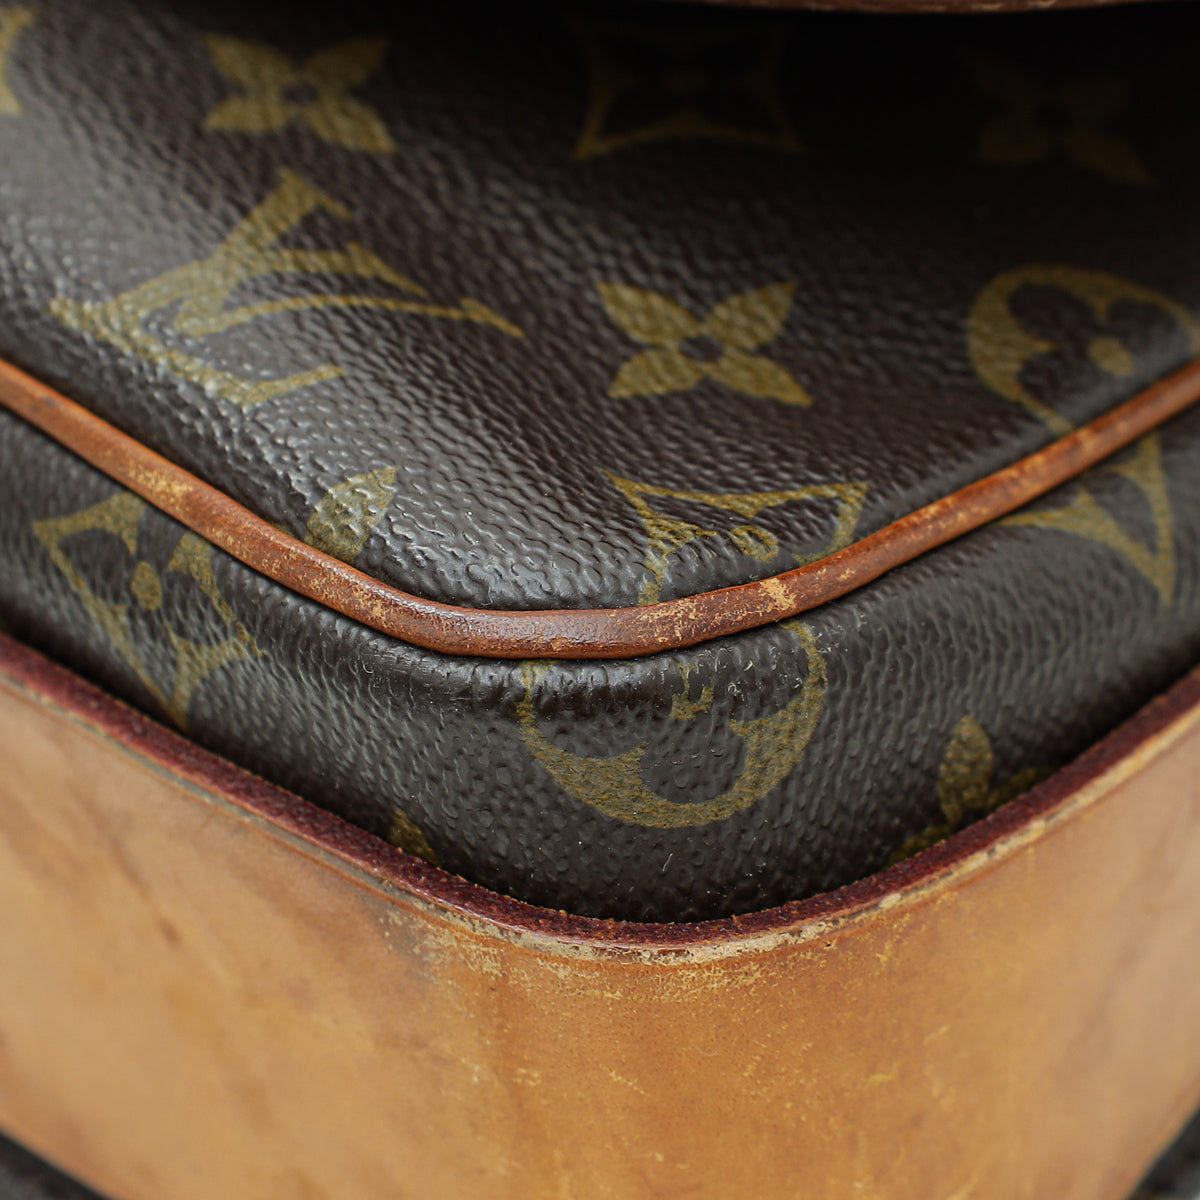 Louis Vuitton Monogram Cartouchiere GM Bag – The Closet